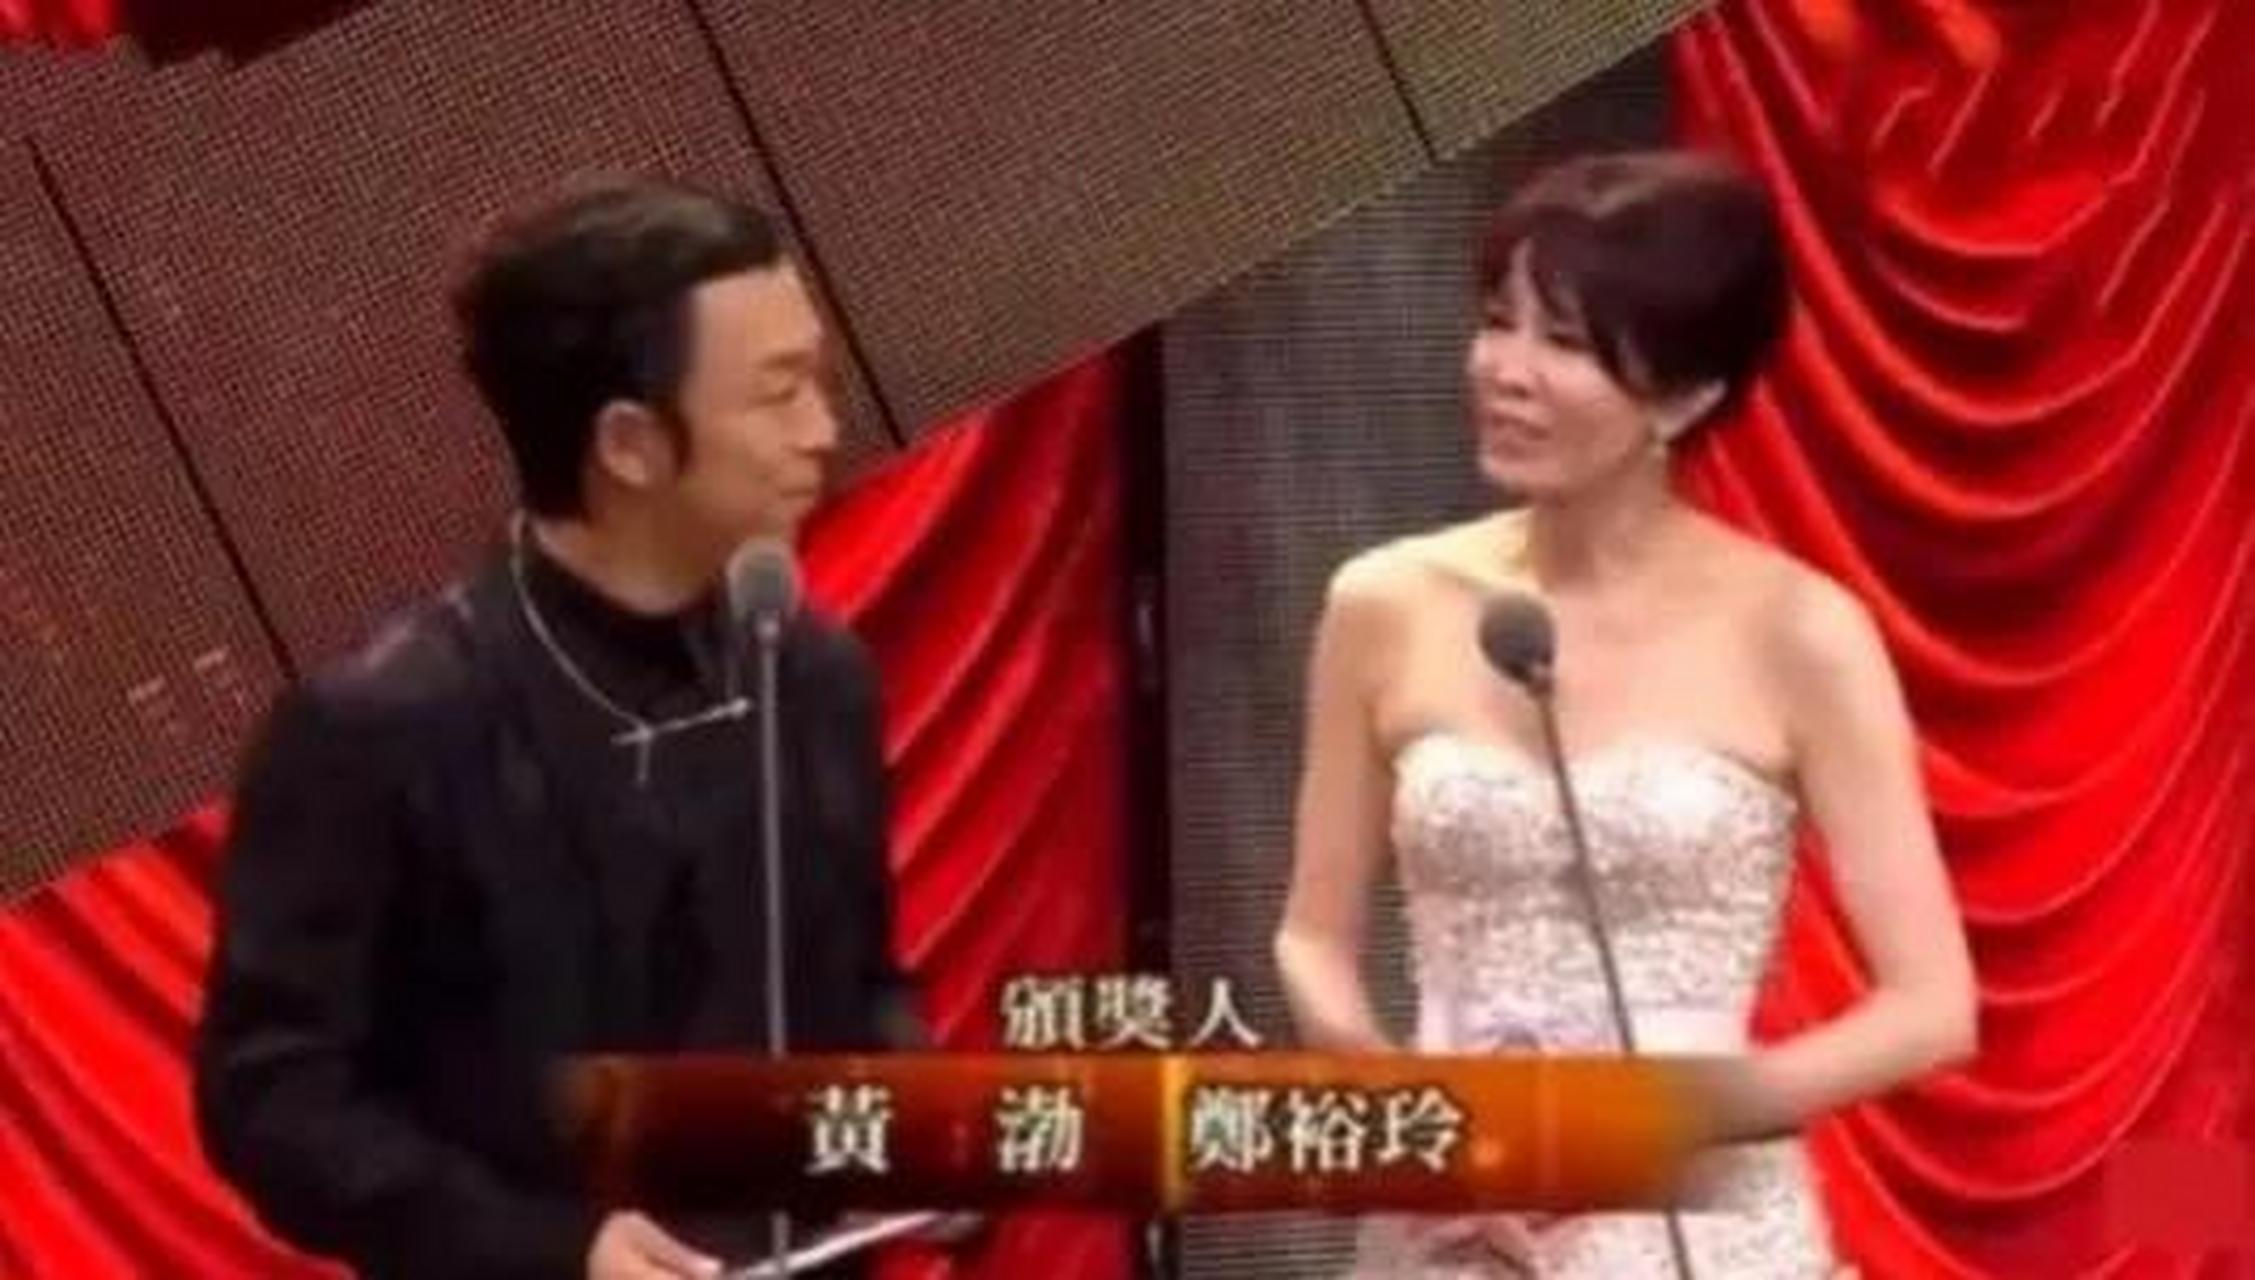 黄渤和郑裕玲主持金马奖颁奖时的对话  郑裕玲:黄渤今天的风很大吗?